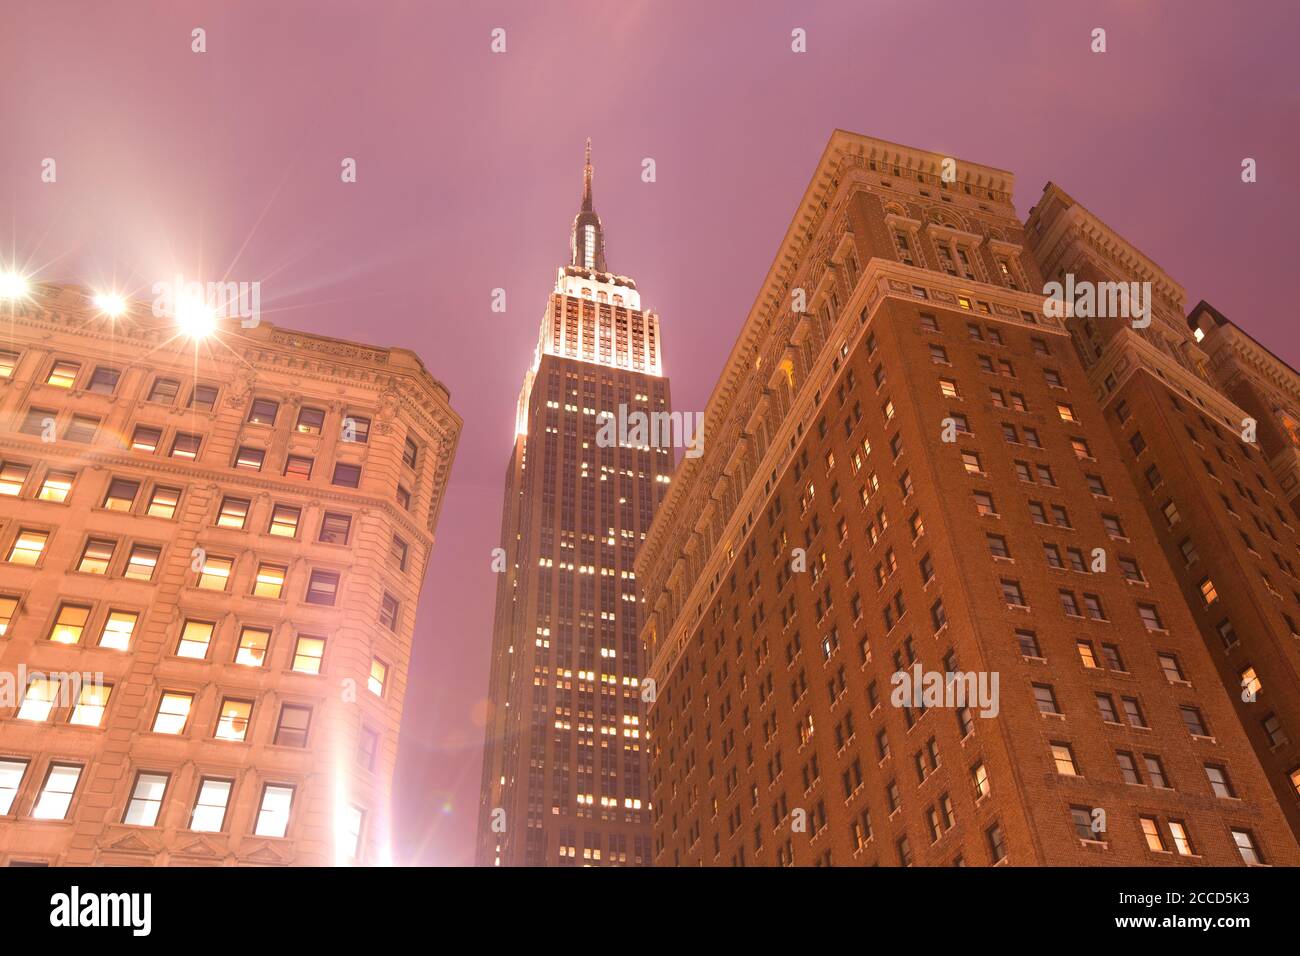 Midtown, Manhattan, New York City, NY, Stati Uniti - skyline degli edifici e dell'Empire state Building da Greeley Square. Foto Stock